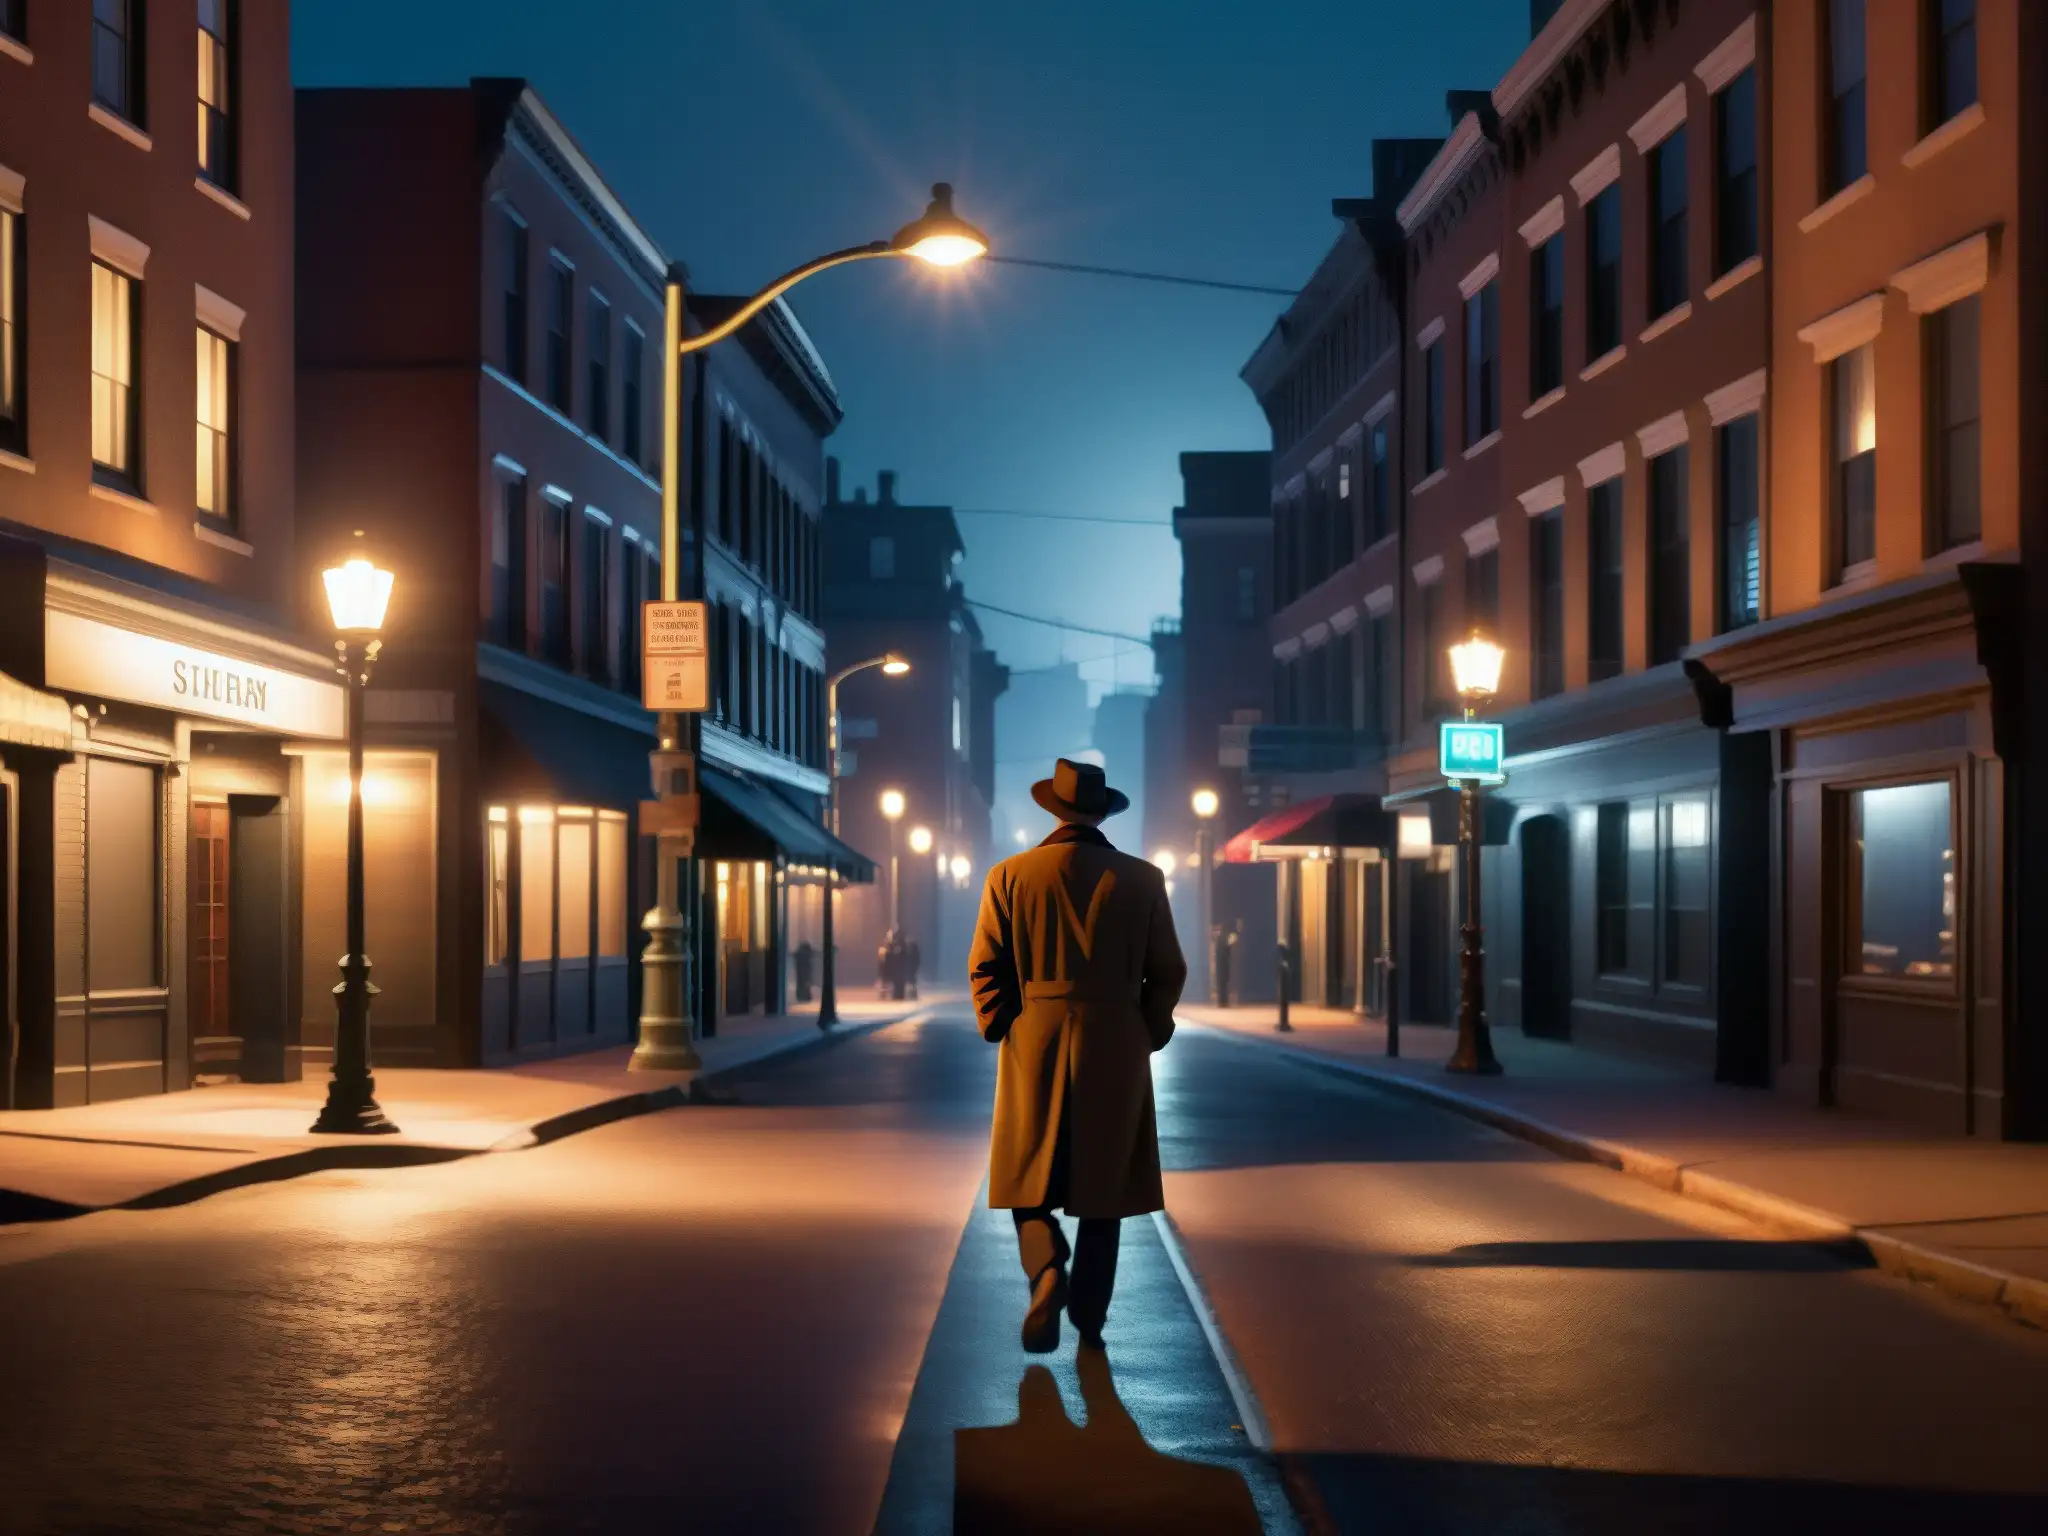 Una calle de la ciudad iluminada tenue con figuras sombrías y una luz de farola parpadeante, evocando misterio y suspenso